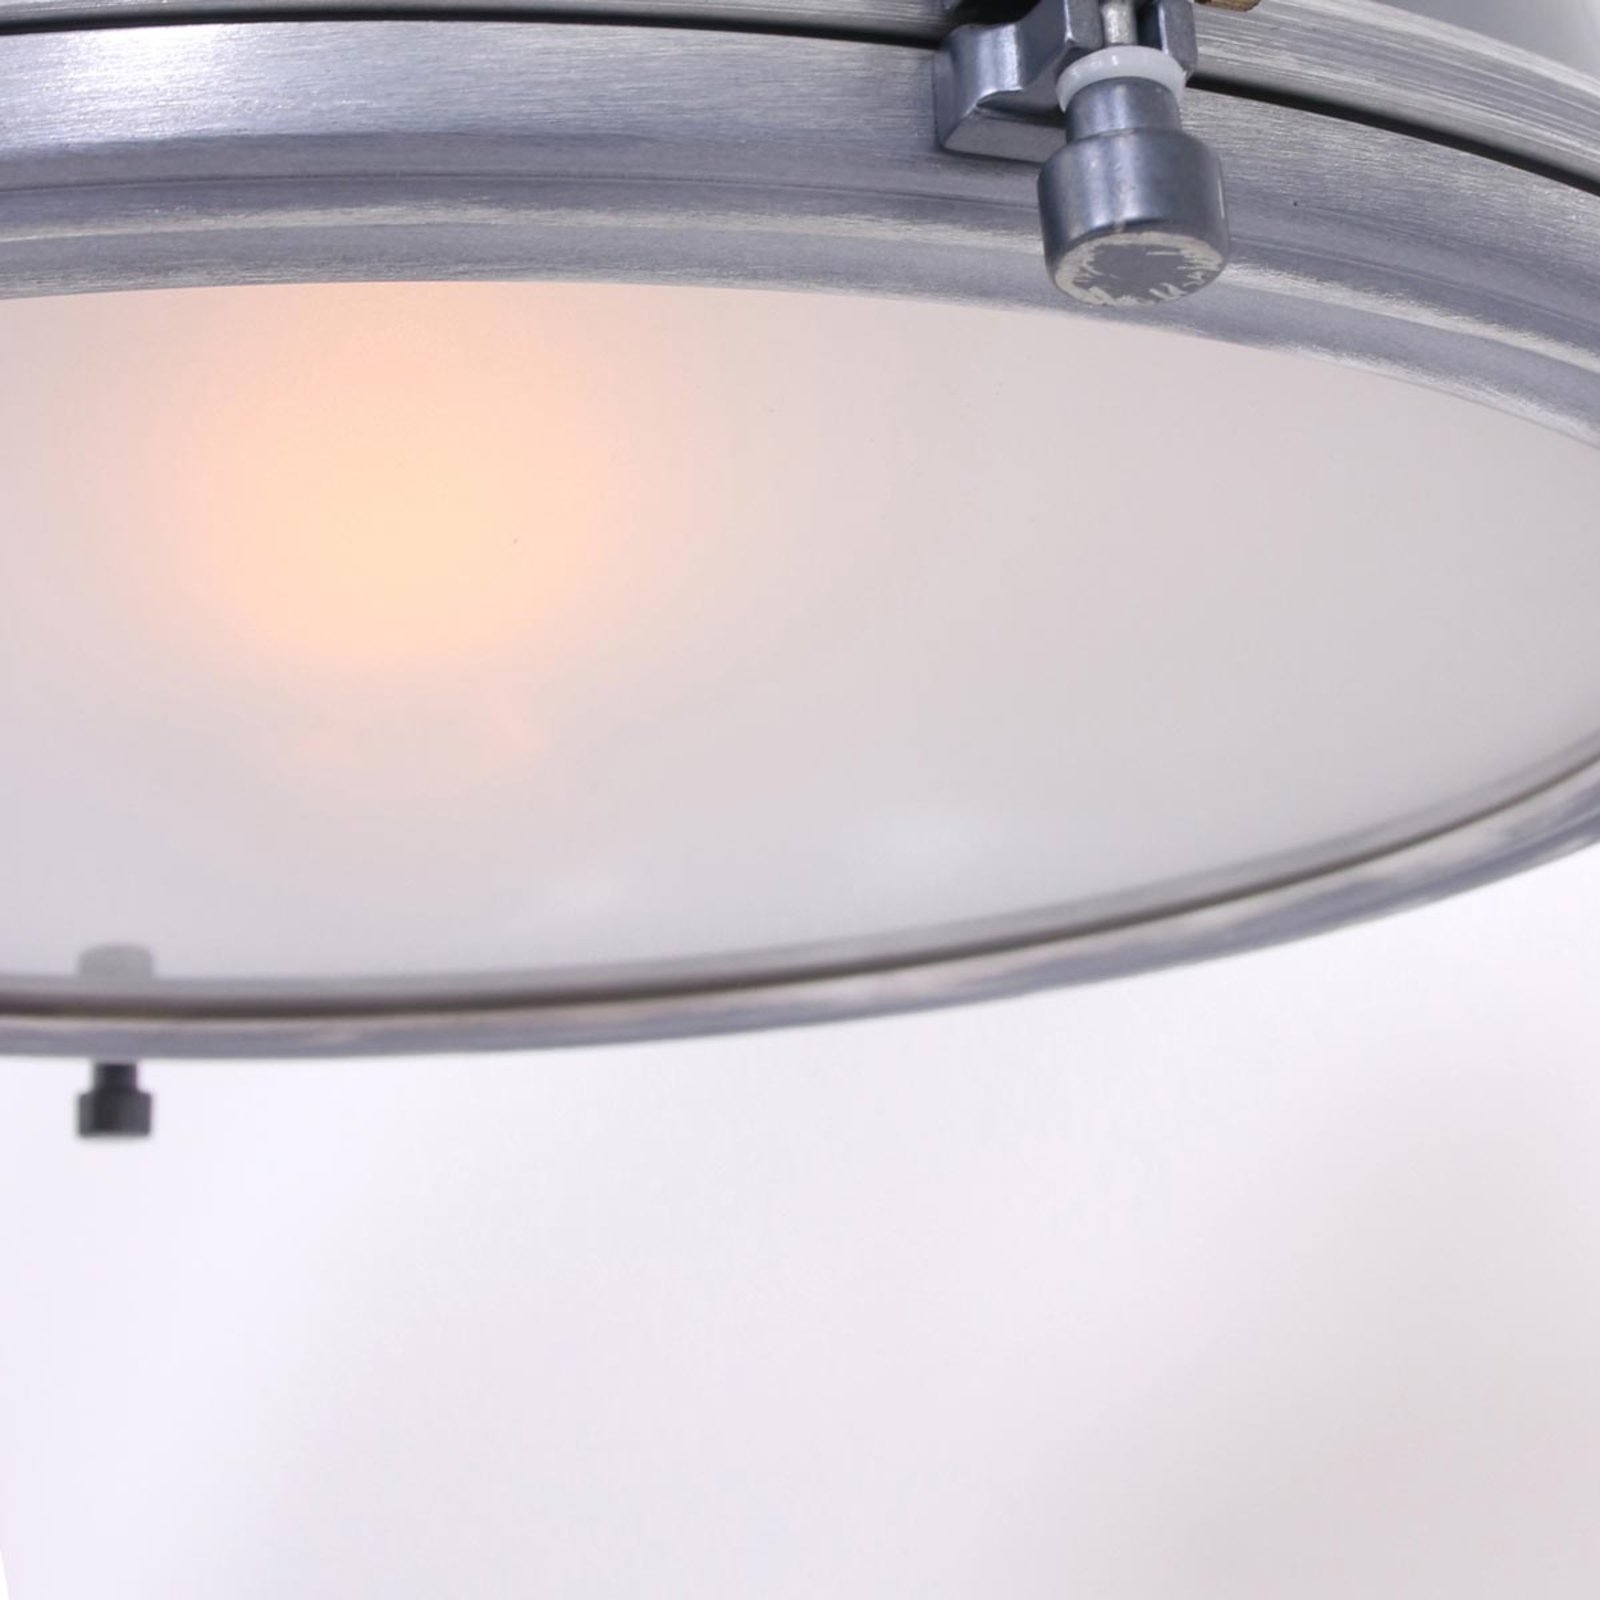 Bikkel - függő lámpa üveg ernyővel